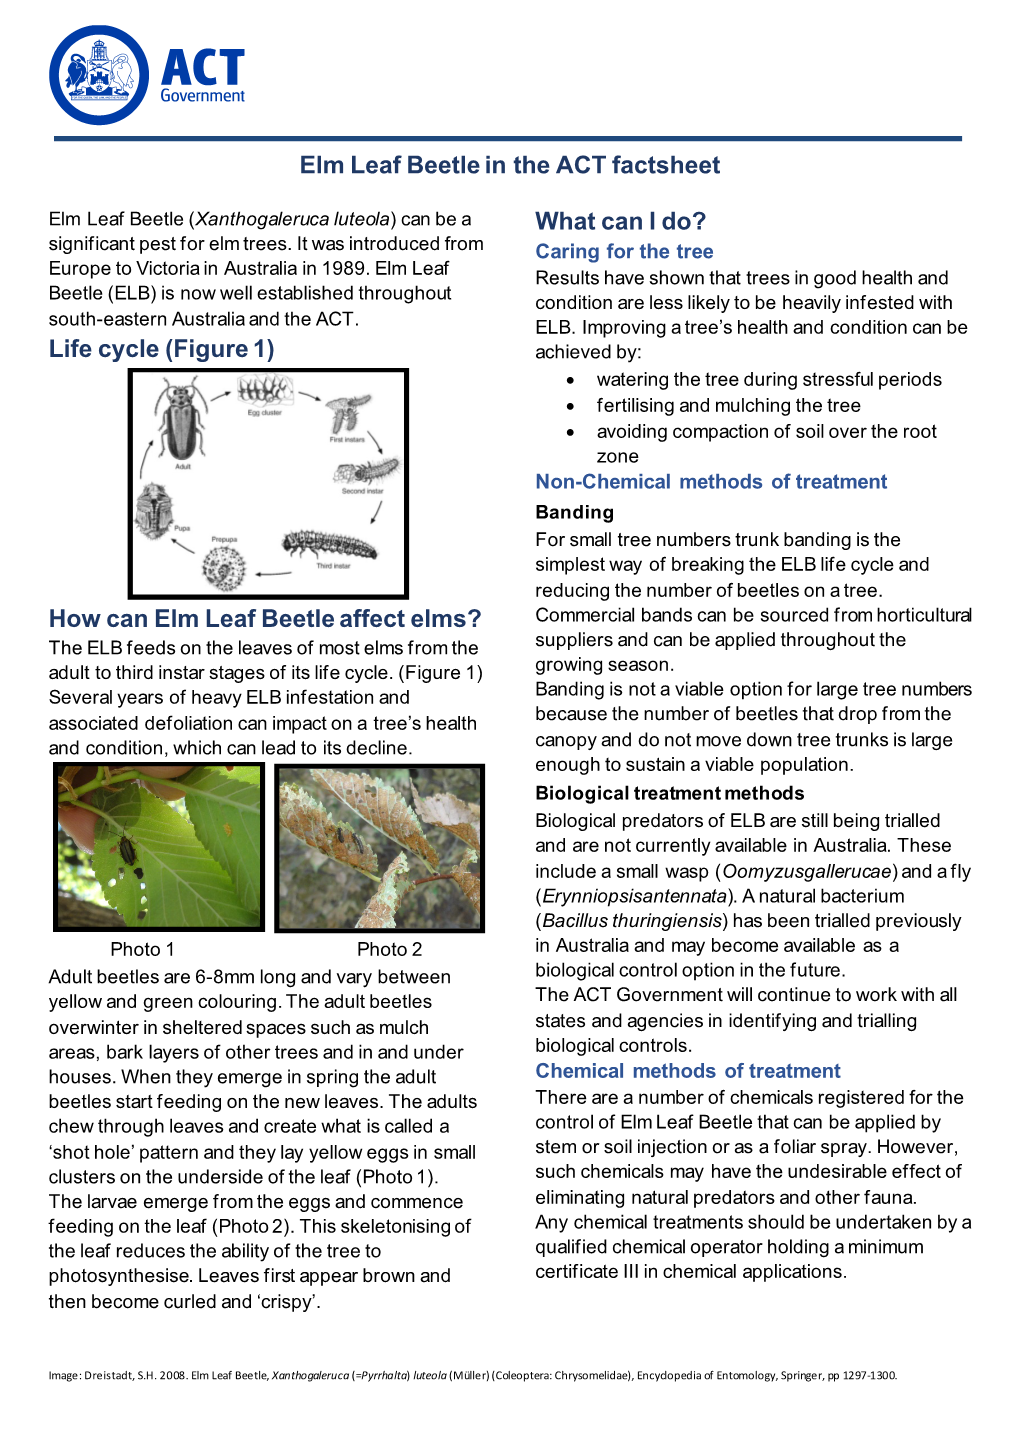 Elm Leaf Beetle in the ACT Factsheet